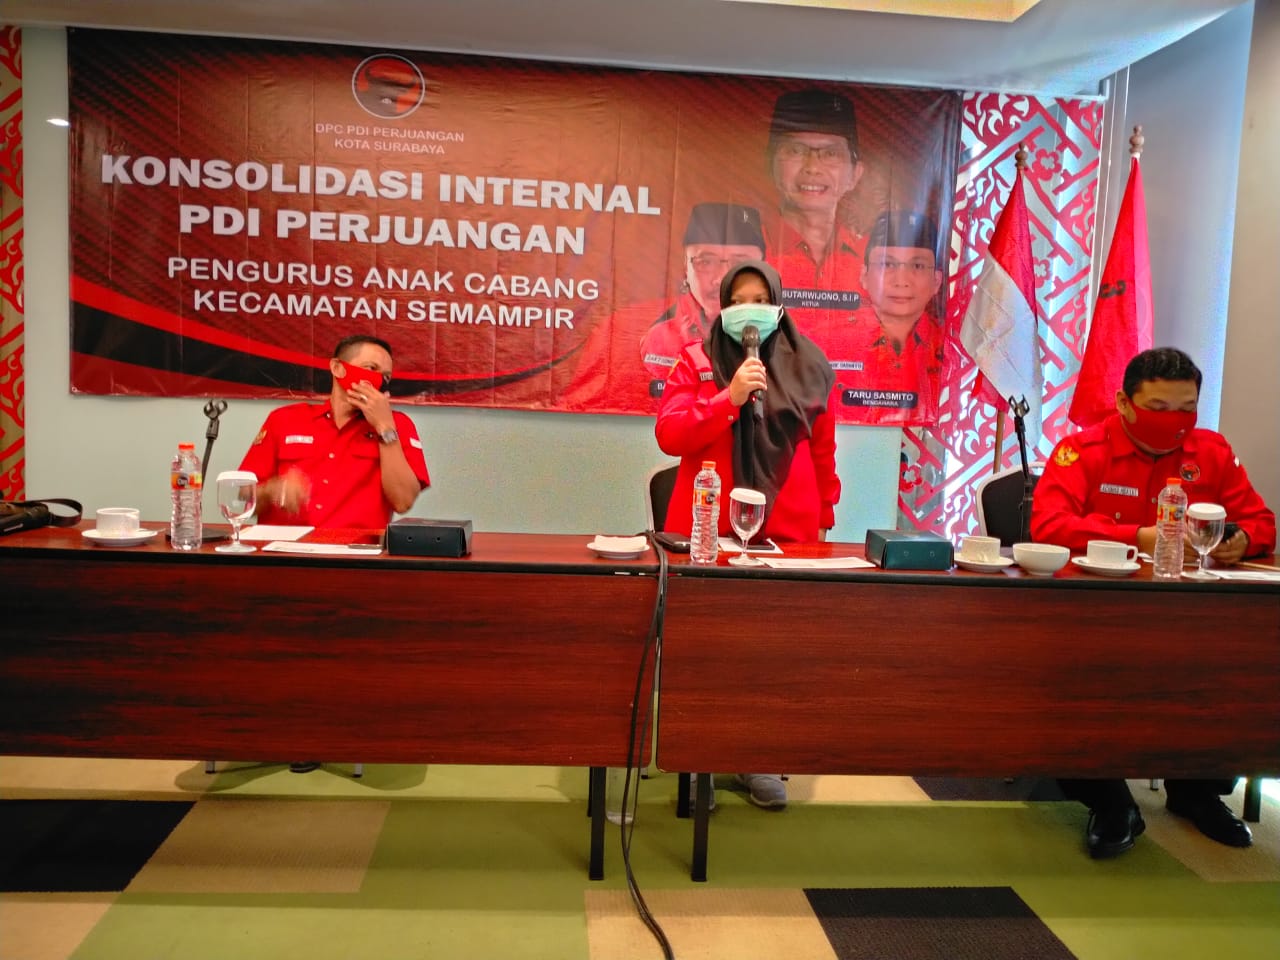 Acara konsolidasi PDI Perjuangan Kota Surabaya. (Foto: dok. ngopibareng.id)